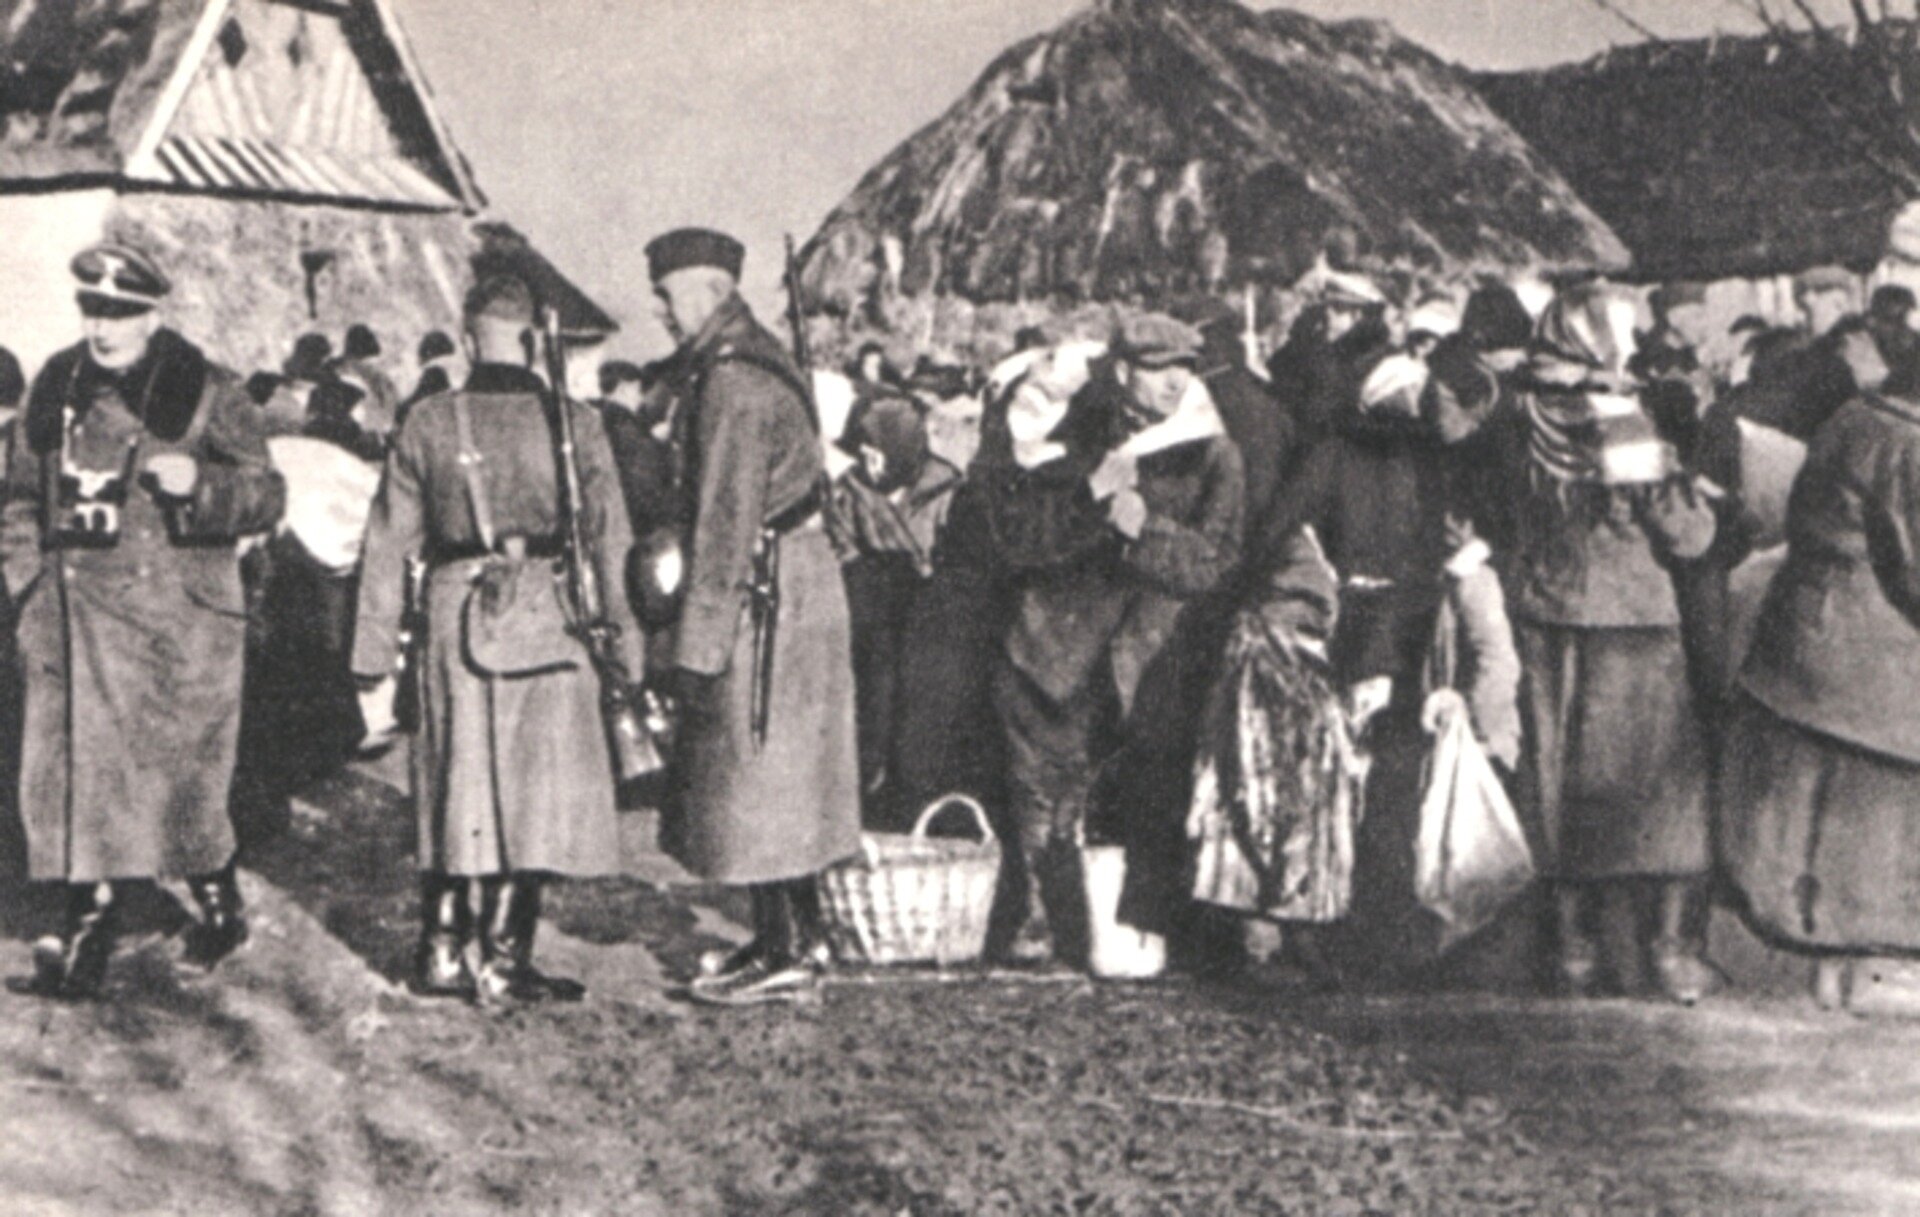 Fotografia czarno-biała przedstawiająca polskich rolników wysiedlonych z farm przez SS. Widoczny jest tłum ludzi, który wygląda, jakby miał zaraz rozpocząć wędówkę. Niemal każda osoba ma ze sobą torbę lub kosz. W tle widoczne są dachy wiejskich domostw.